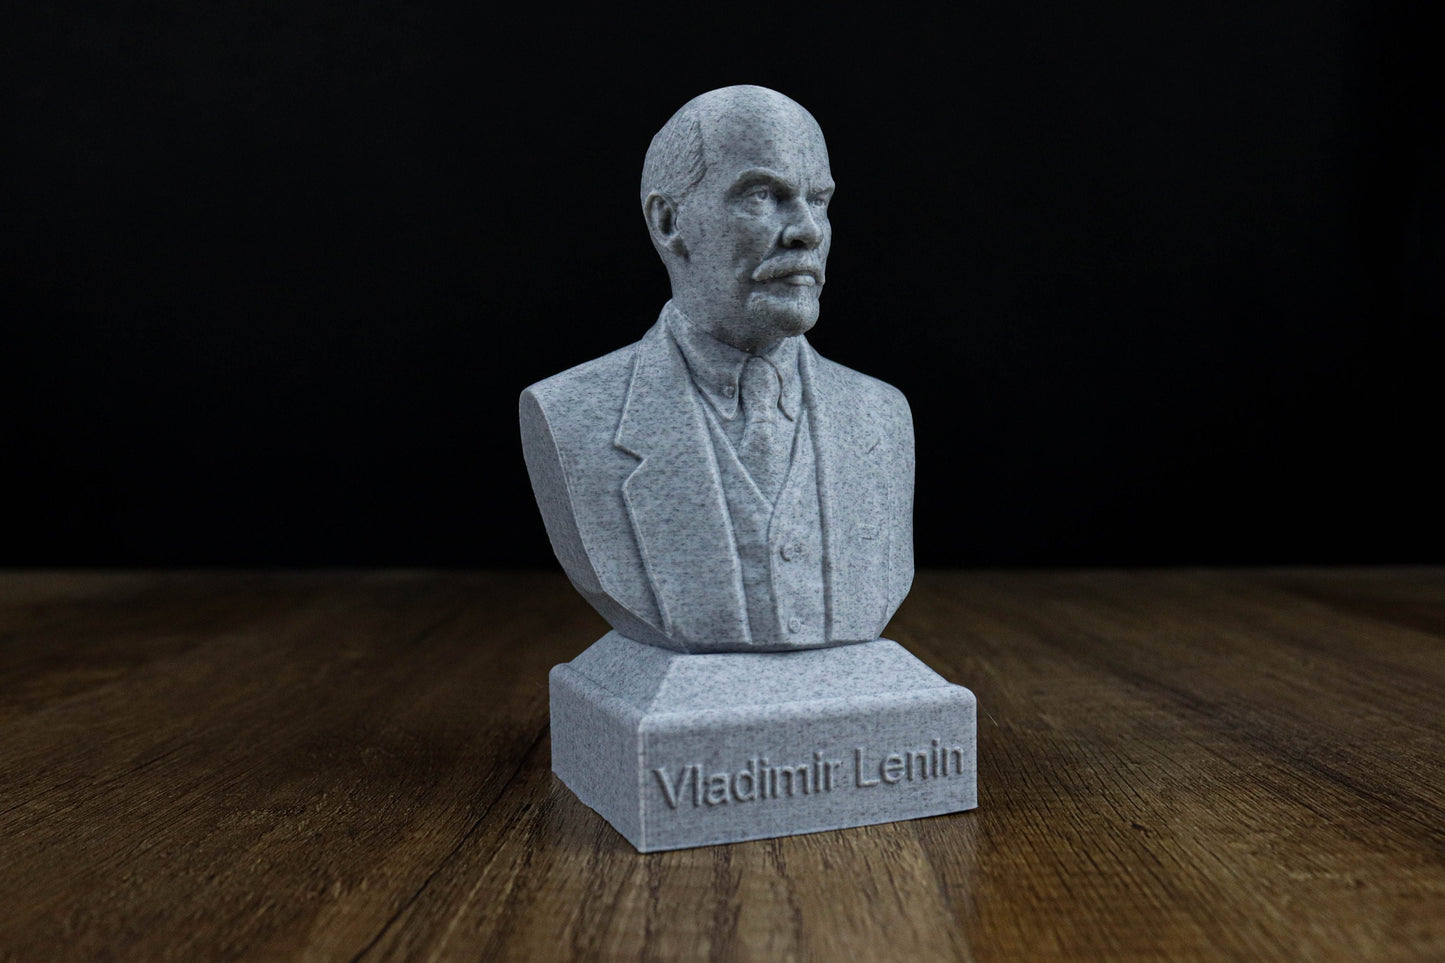 Vladimir Lenin Bust, Russian Revolutionary